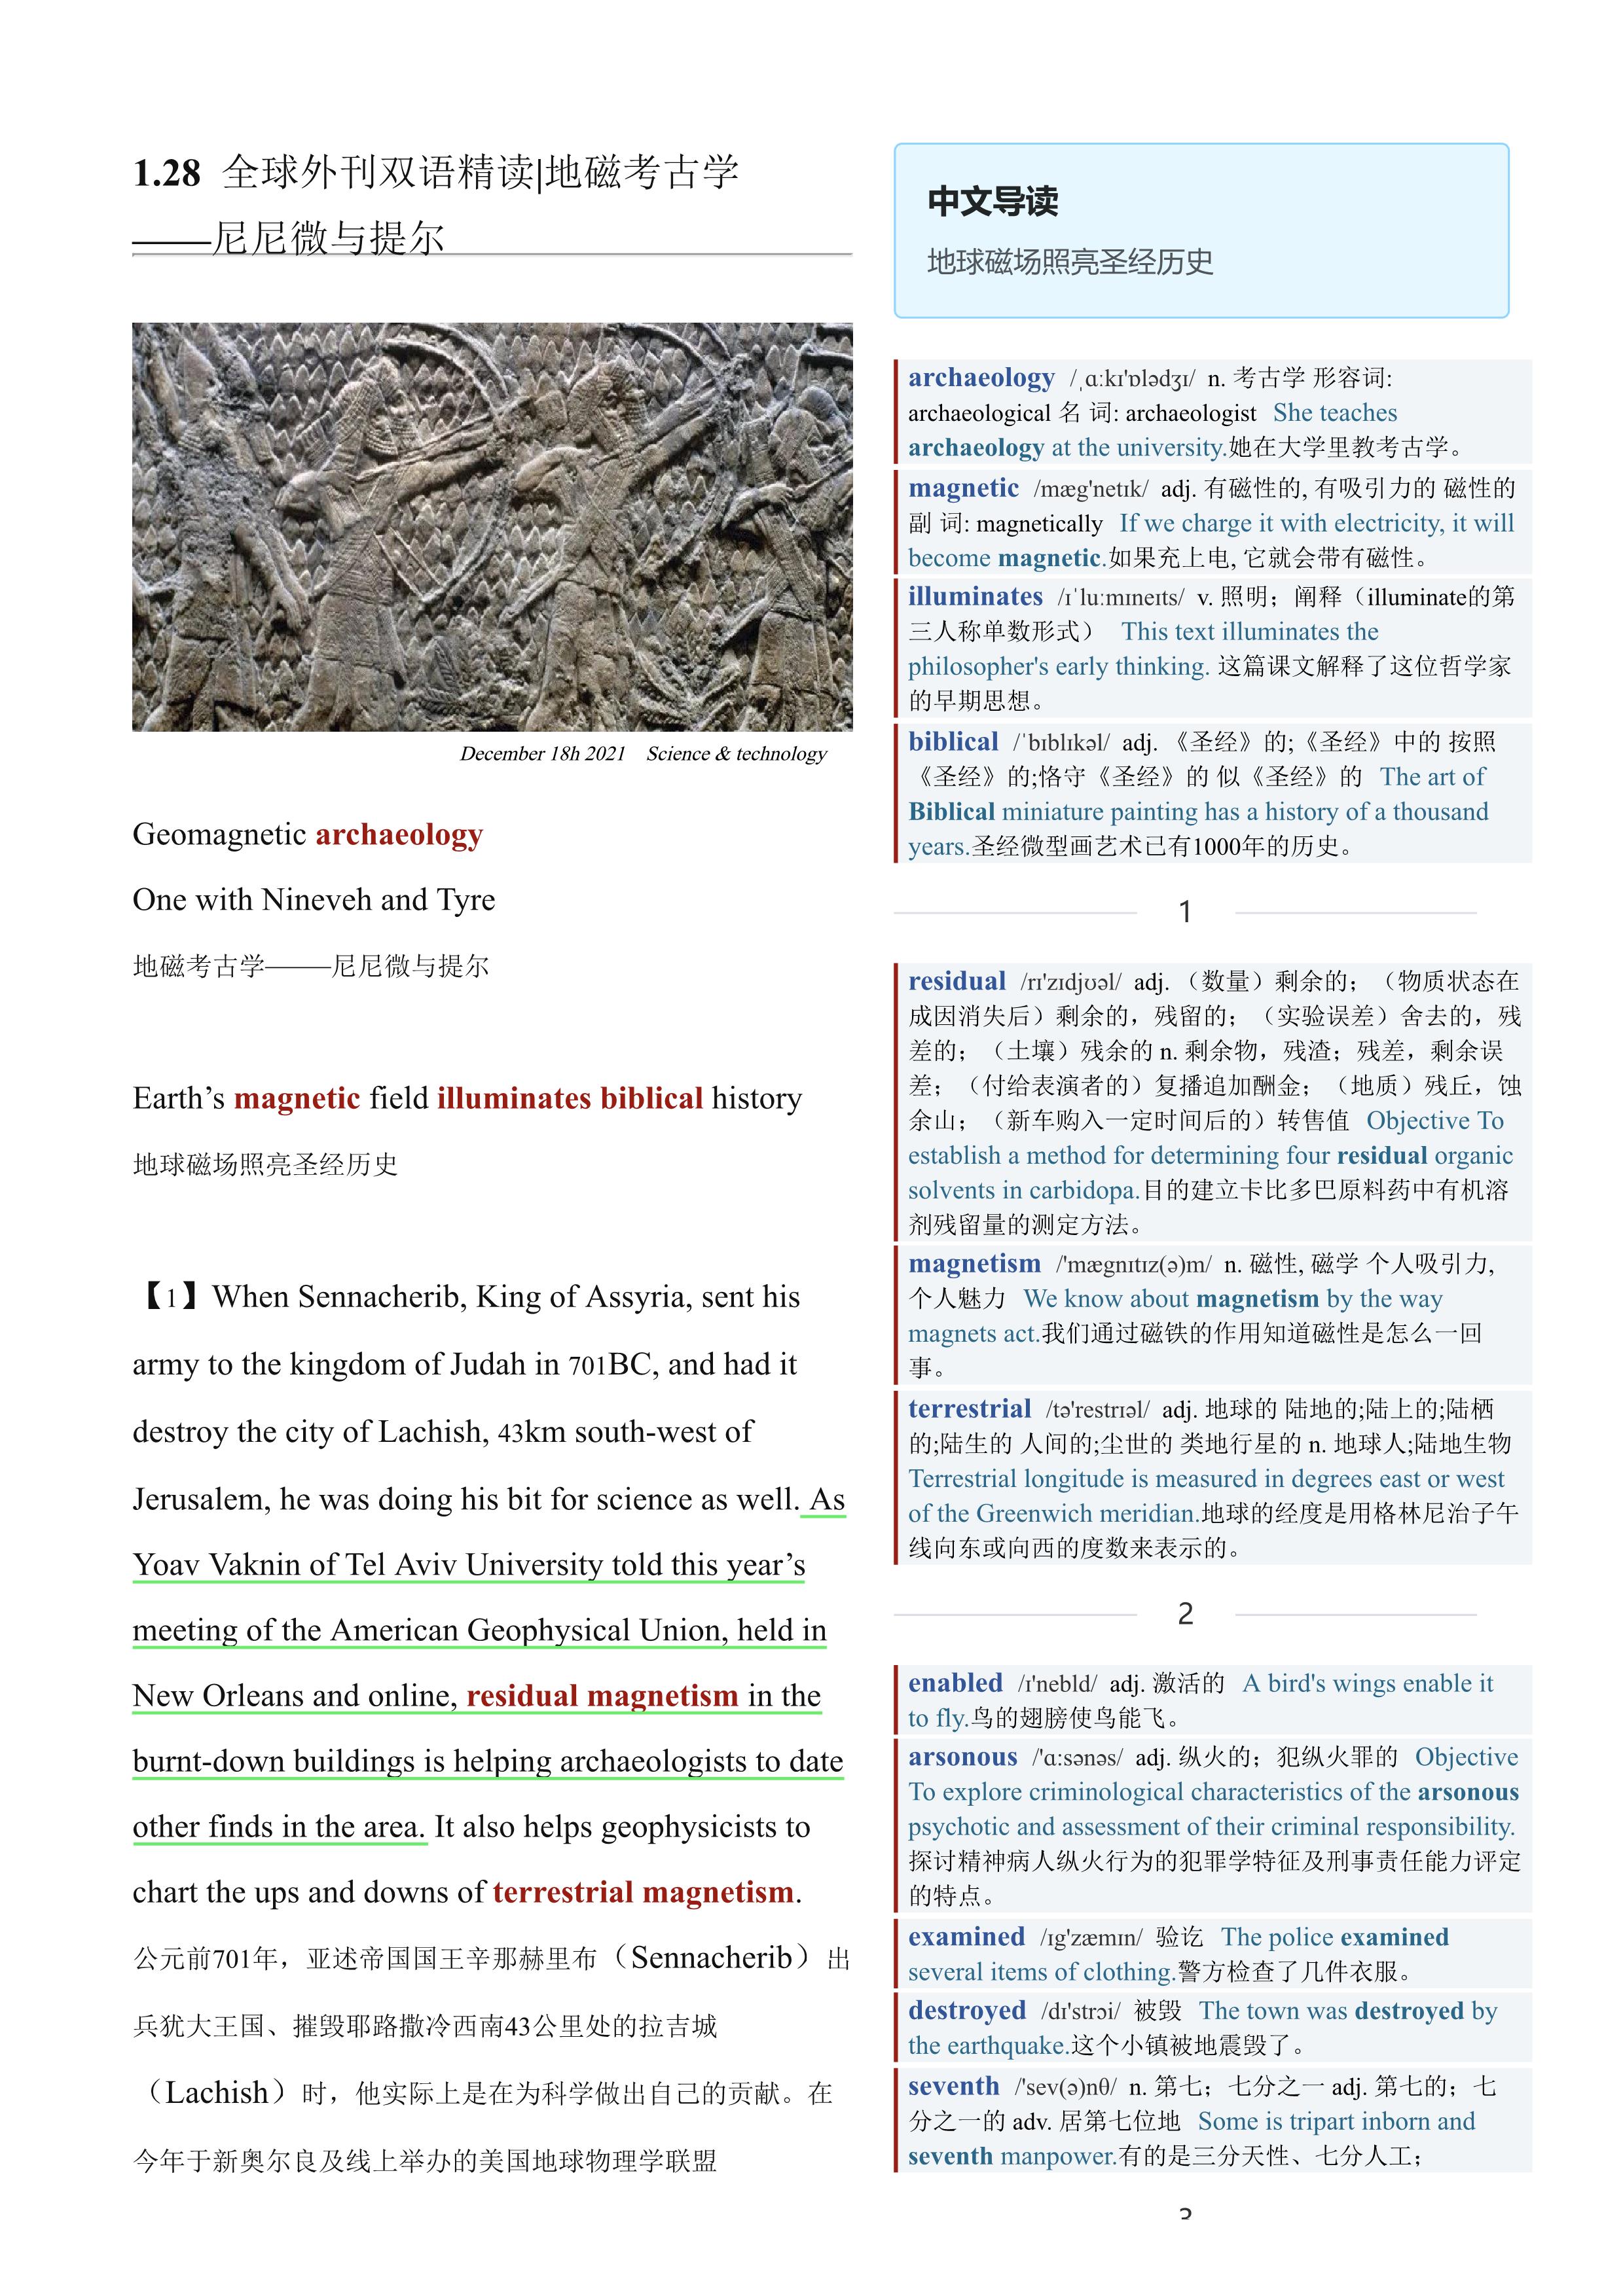 2022.01.28 经济学人双语精读丨地磁考古学——尼尼微与提尔 (.PDF/DOC/MP3)